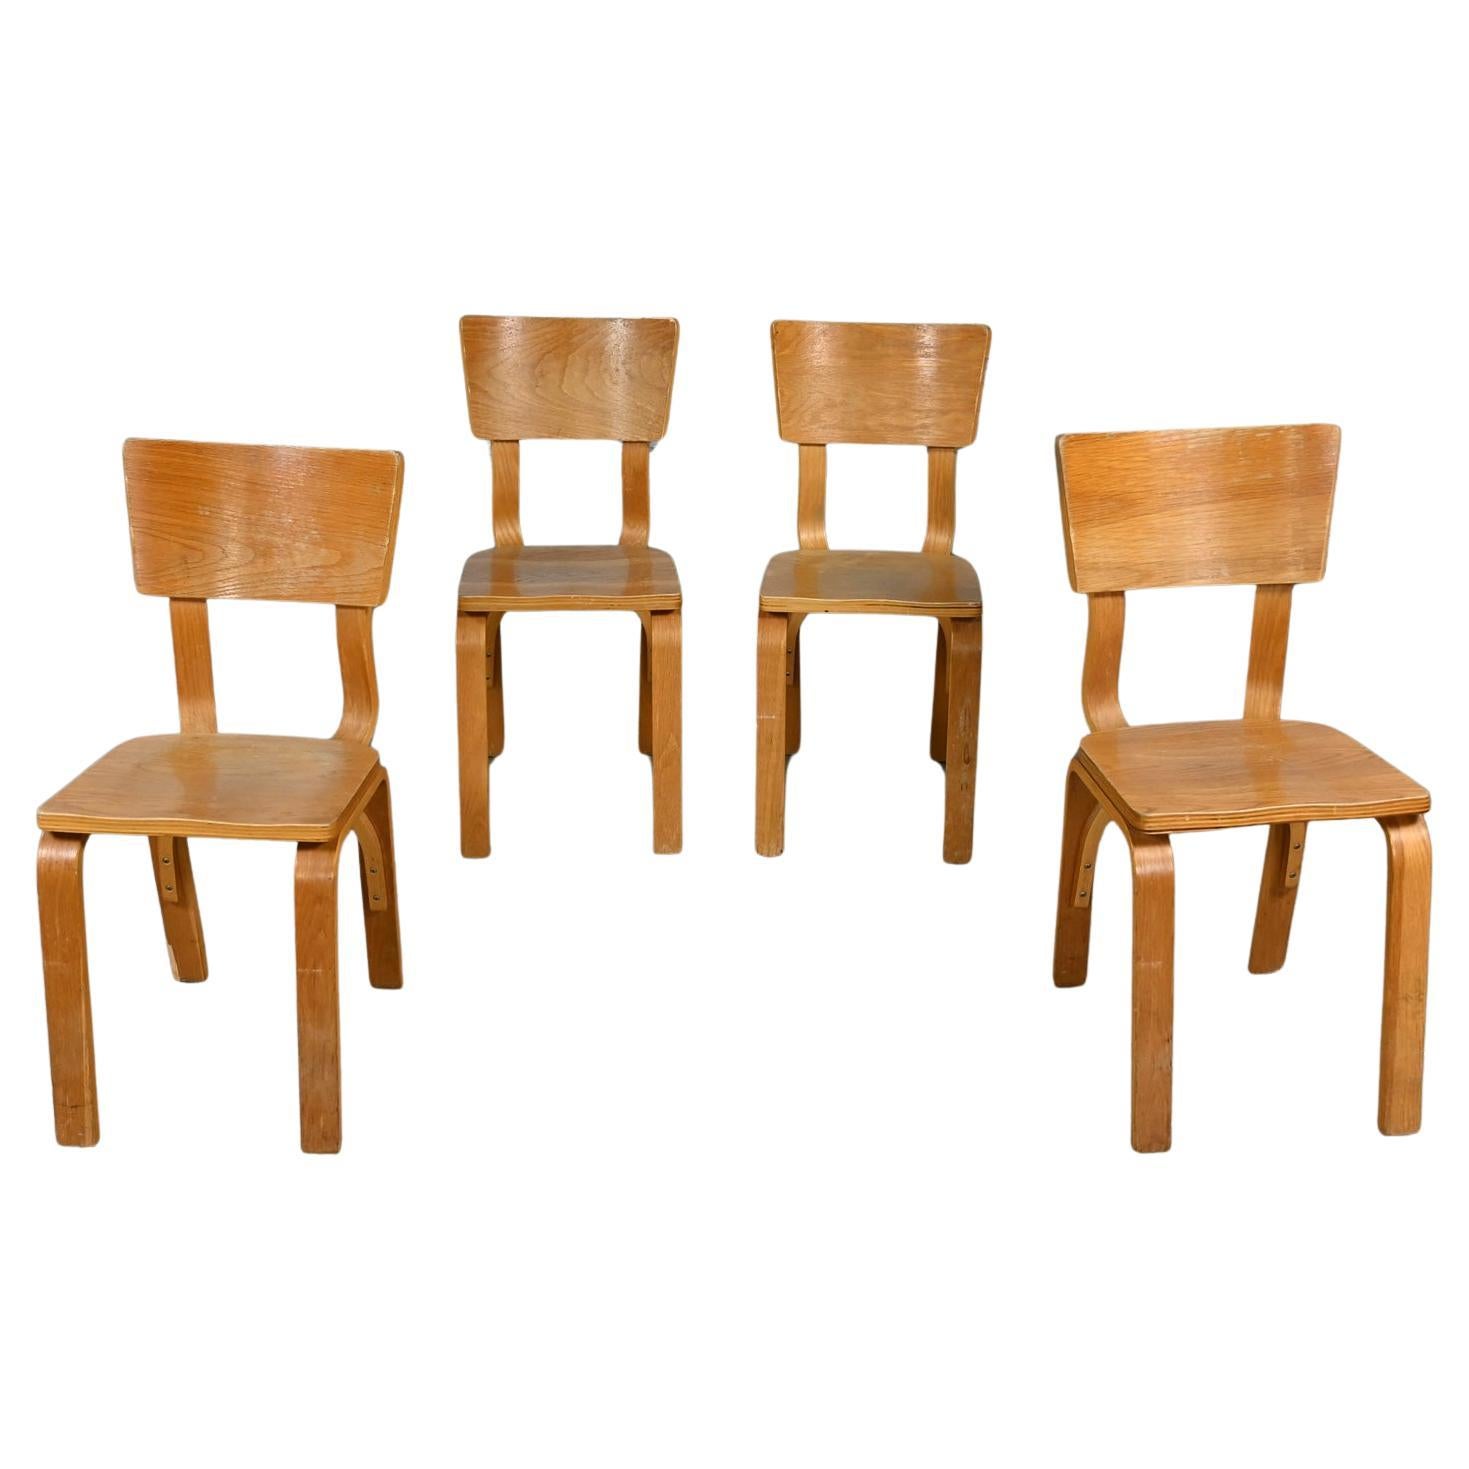 Ensemble de 4 chaises de salle à manger MCM Thonet #1216 en contreplaqué de chêne courbé, assise en selle, arc simple